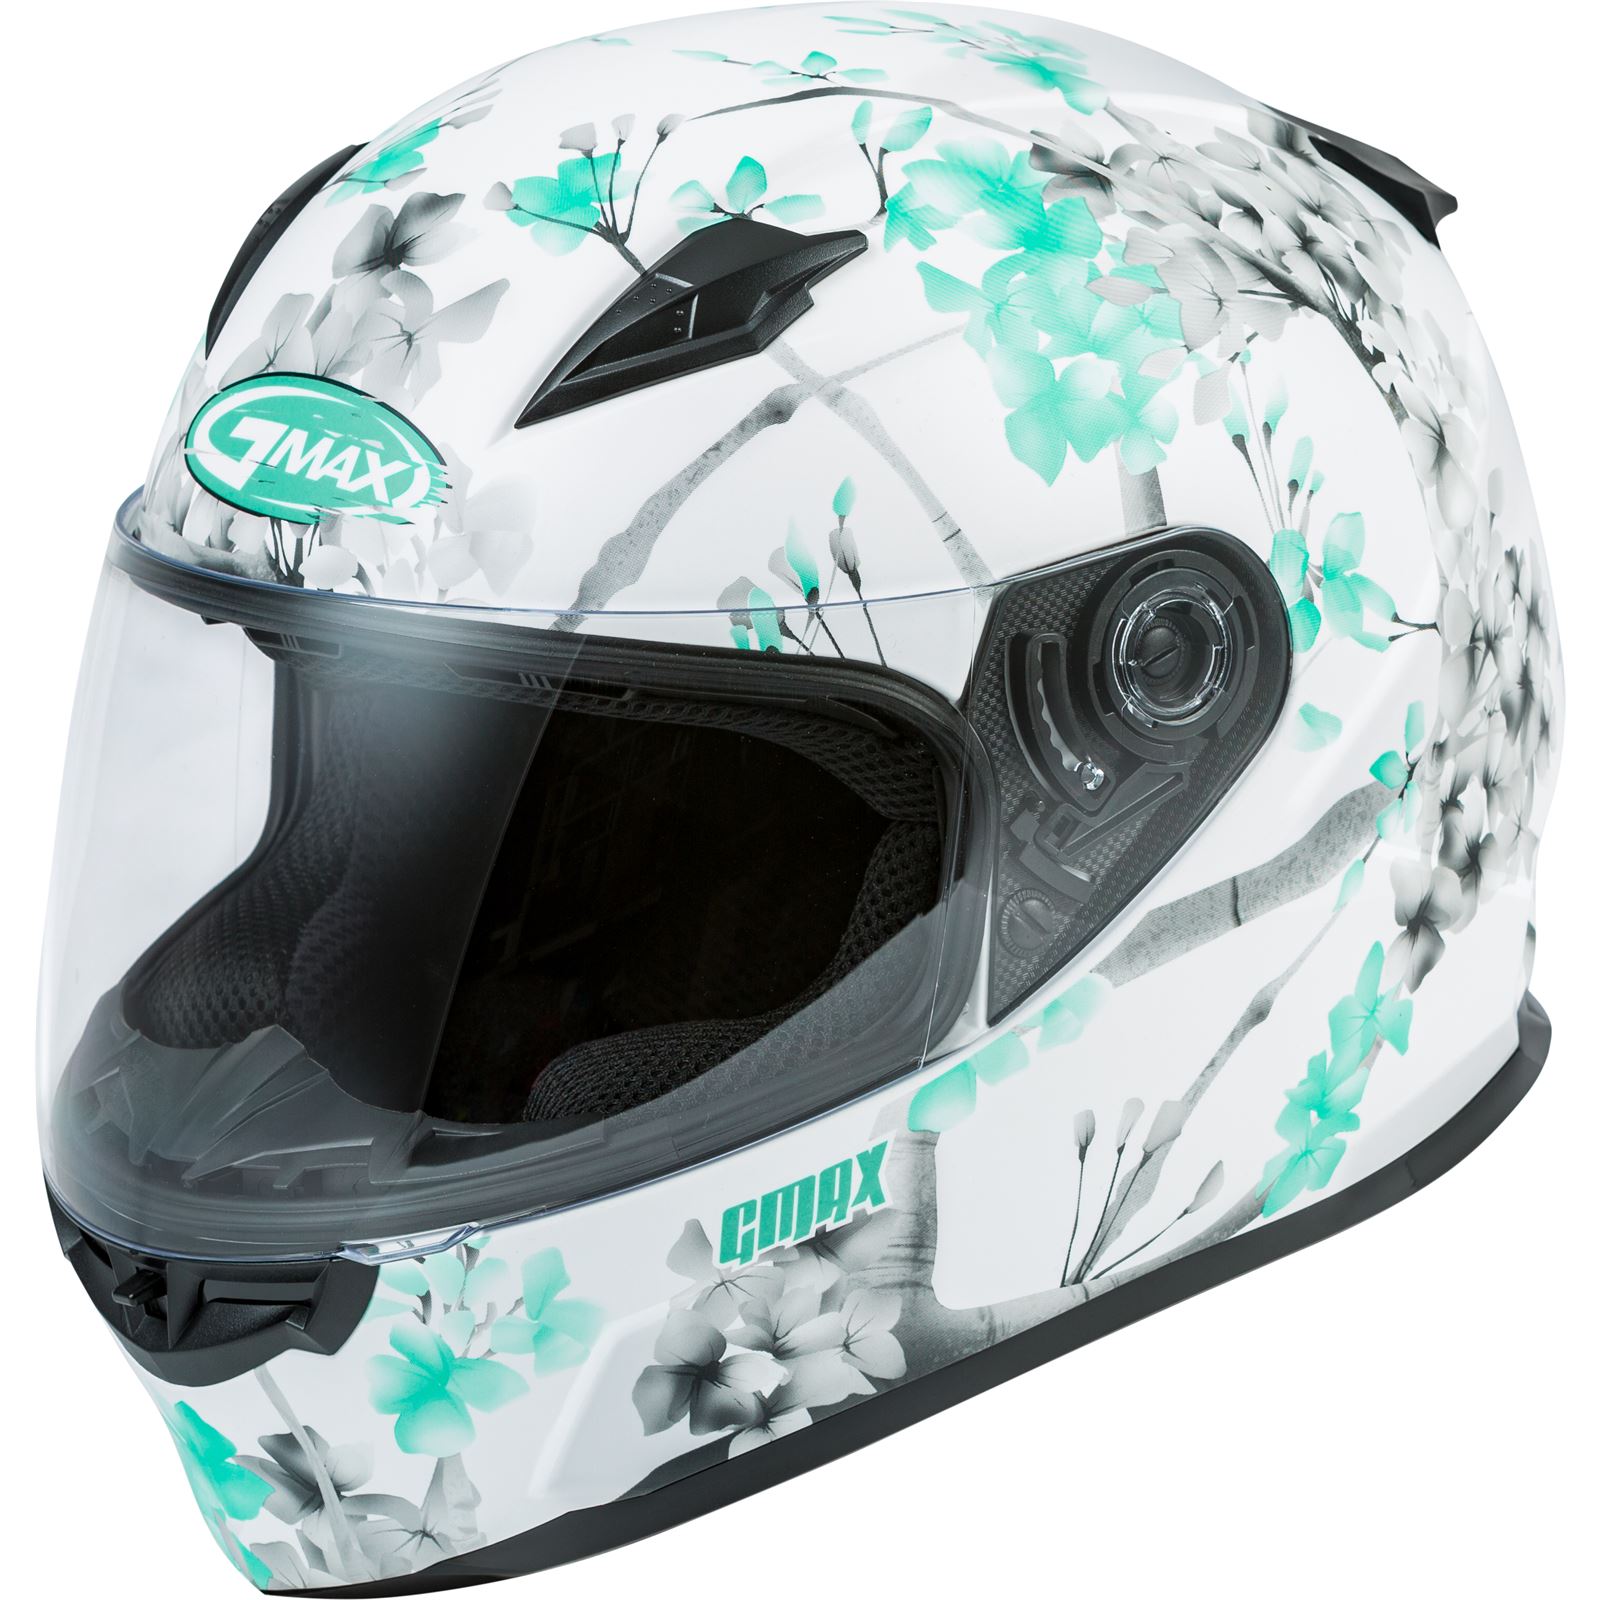 GMax FF-49 Full-Face Blossom Helmet - Matte White/Teal/Grey - X-Large